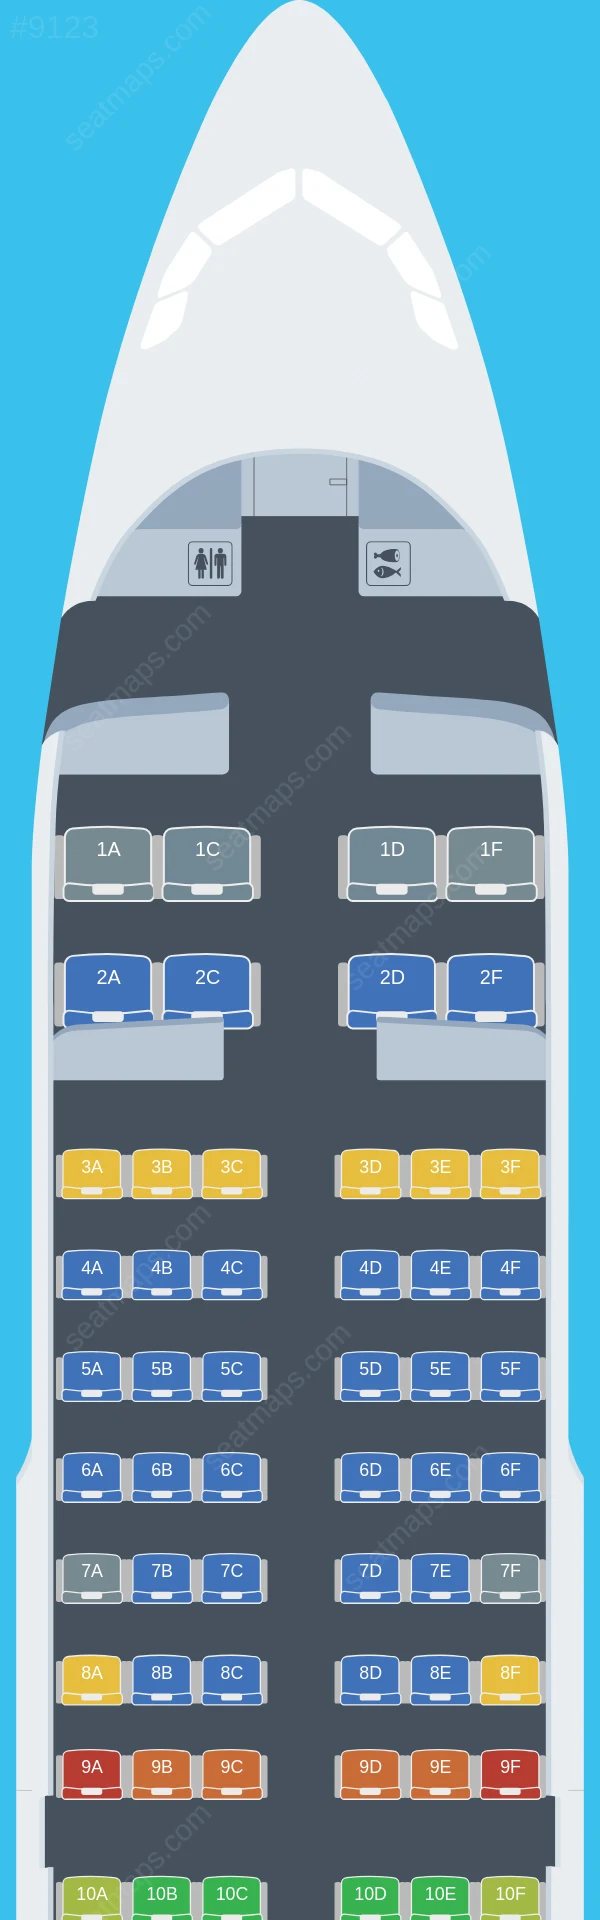 Air Travel Airbus A319-100 seatmap preview